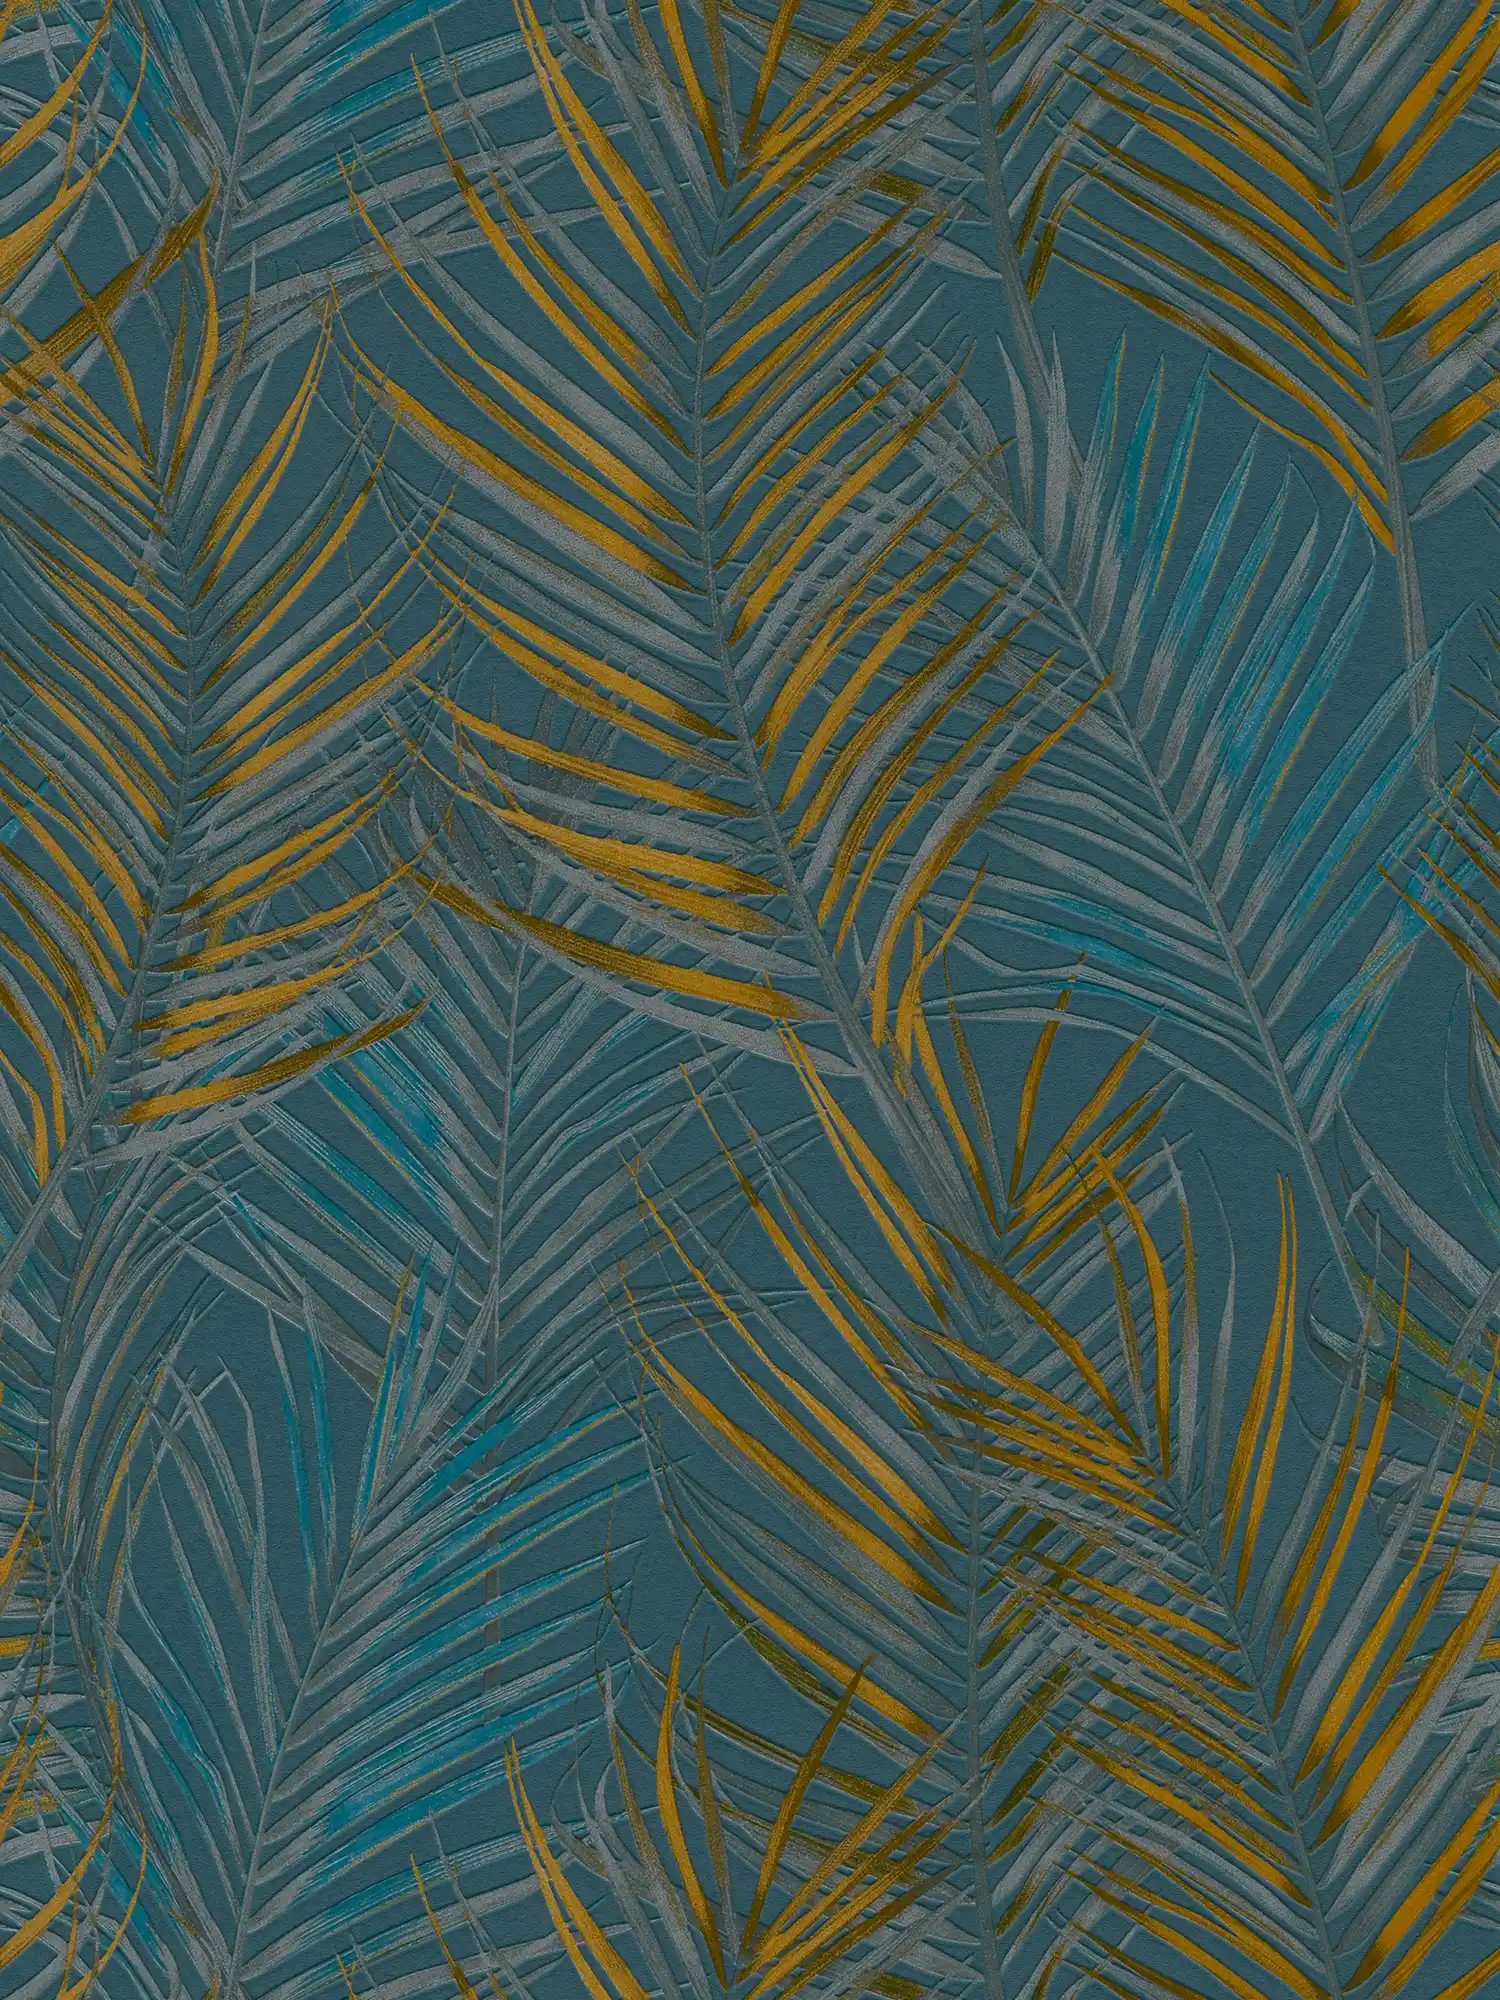 behang jungle patroon met palmbladeren - blauw, geel, petrol
